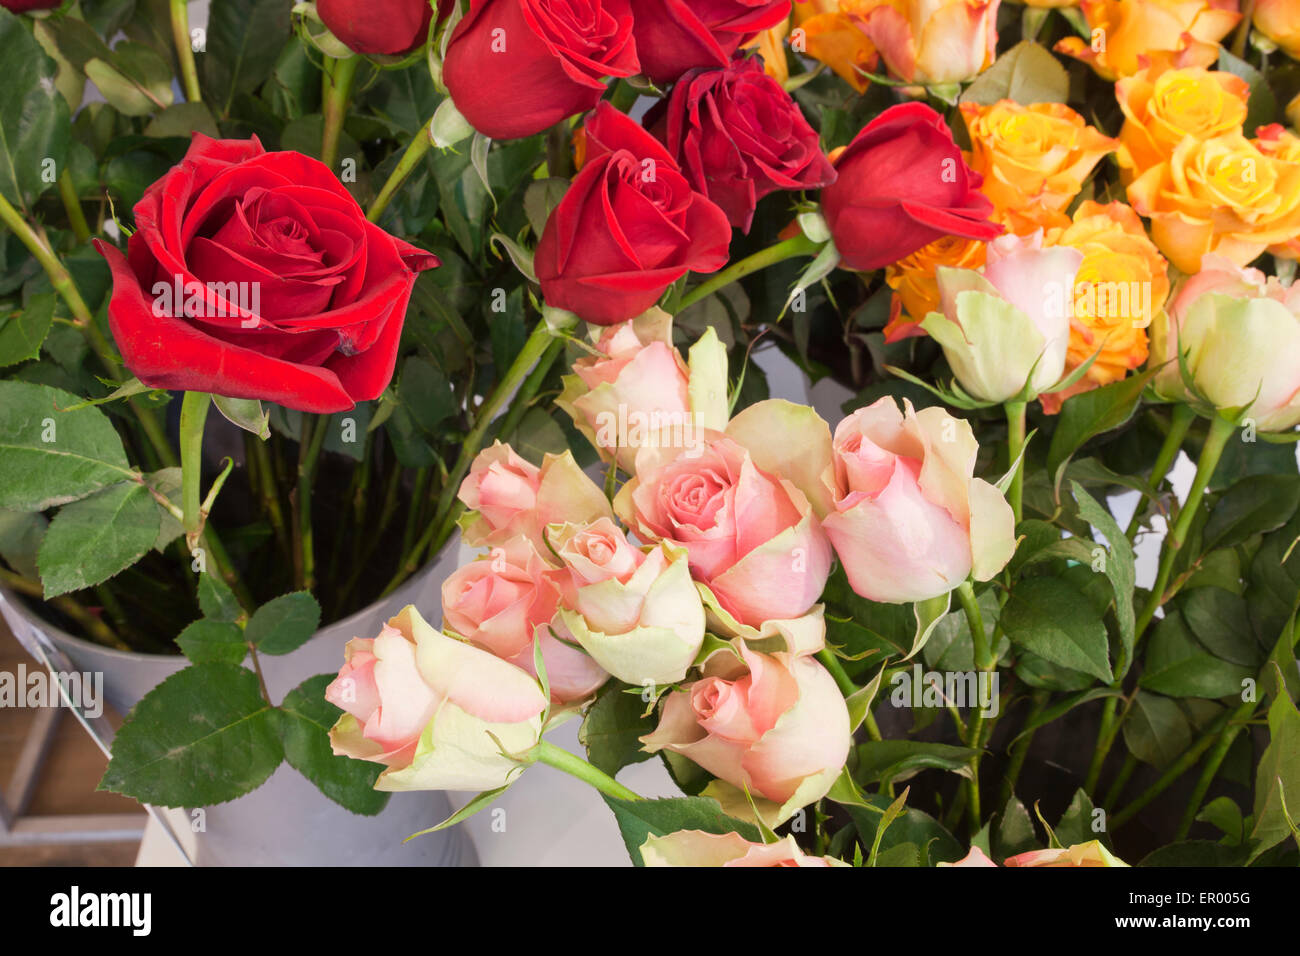 Un bouquet de roses rouges et jaunes Banque D'Images